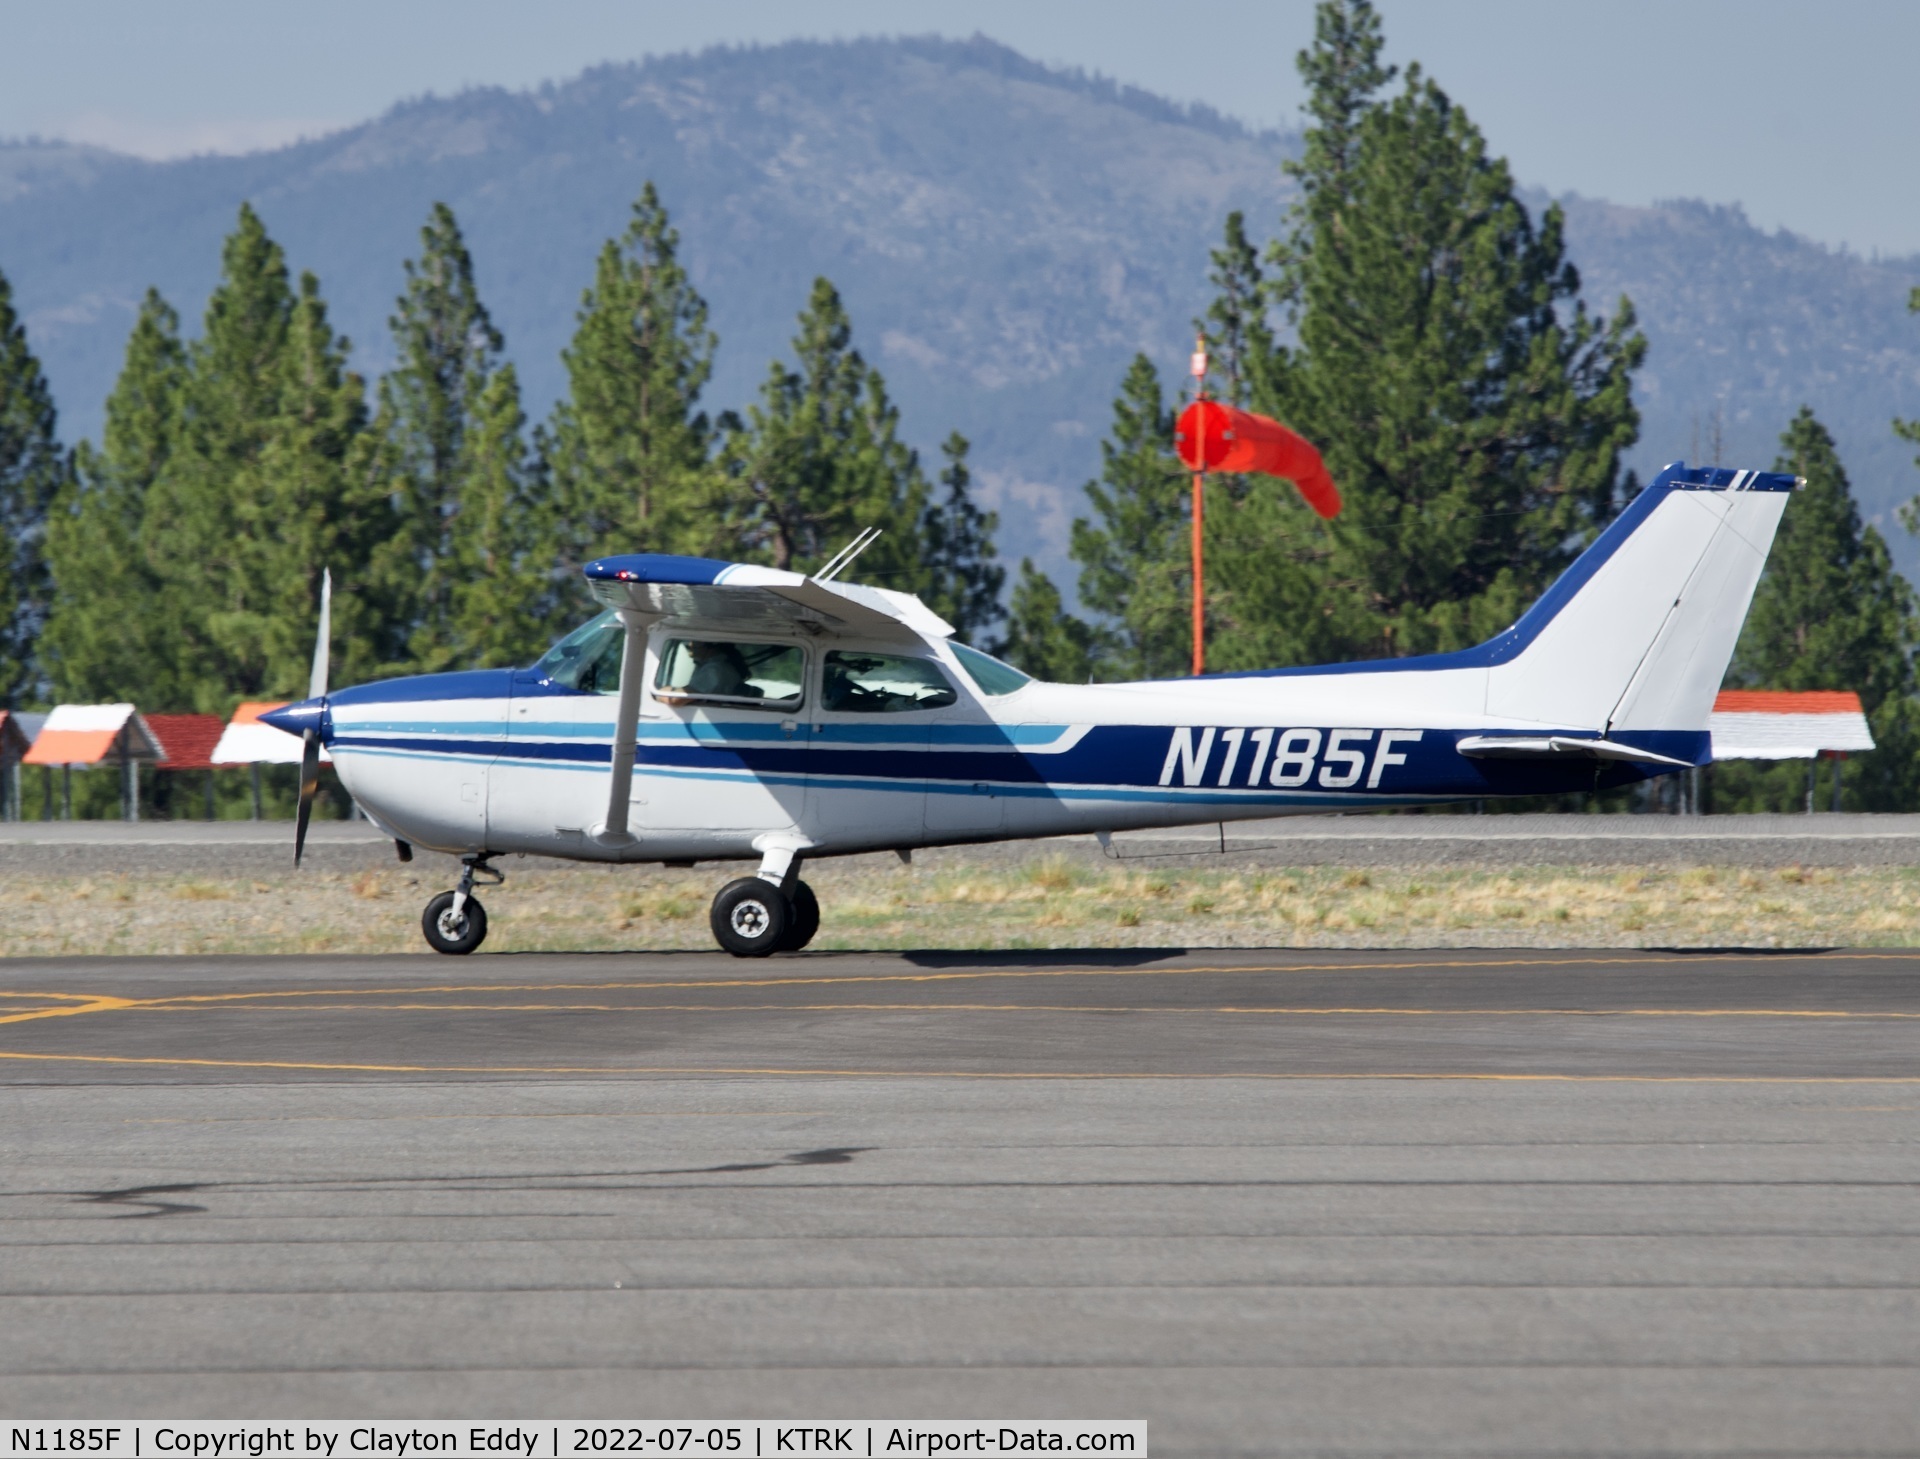 N1185F, 1979 Cessna 172N C/N 17272963, Truckee airport in California 2022.